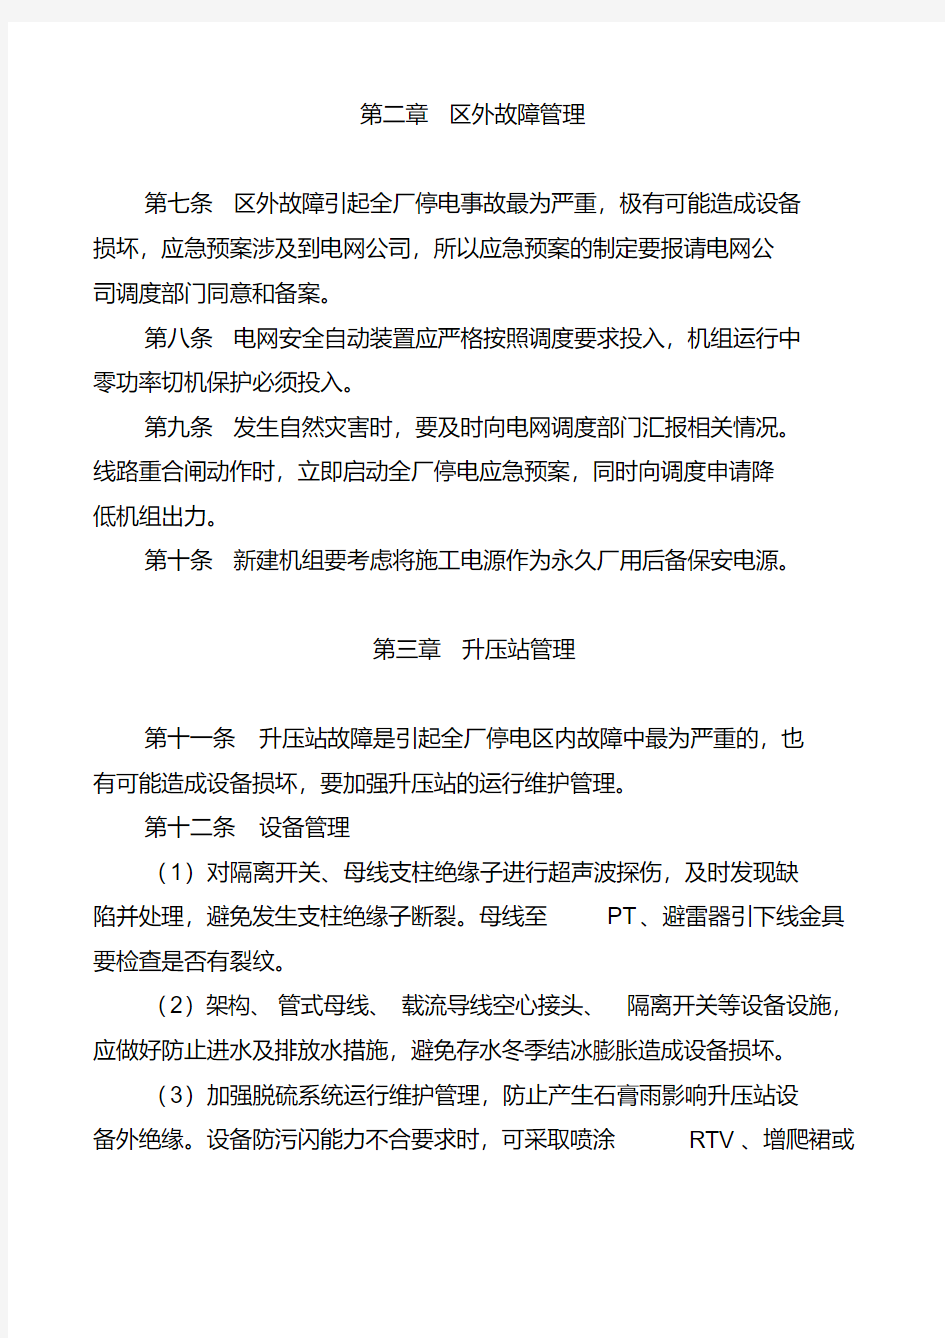 【2019年整理】中国大唐集团公司防止全厂停电指导意见